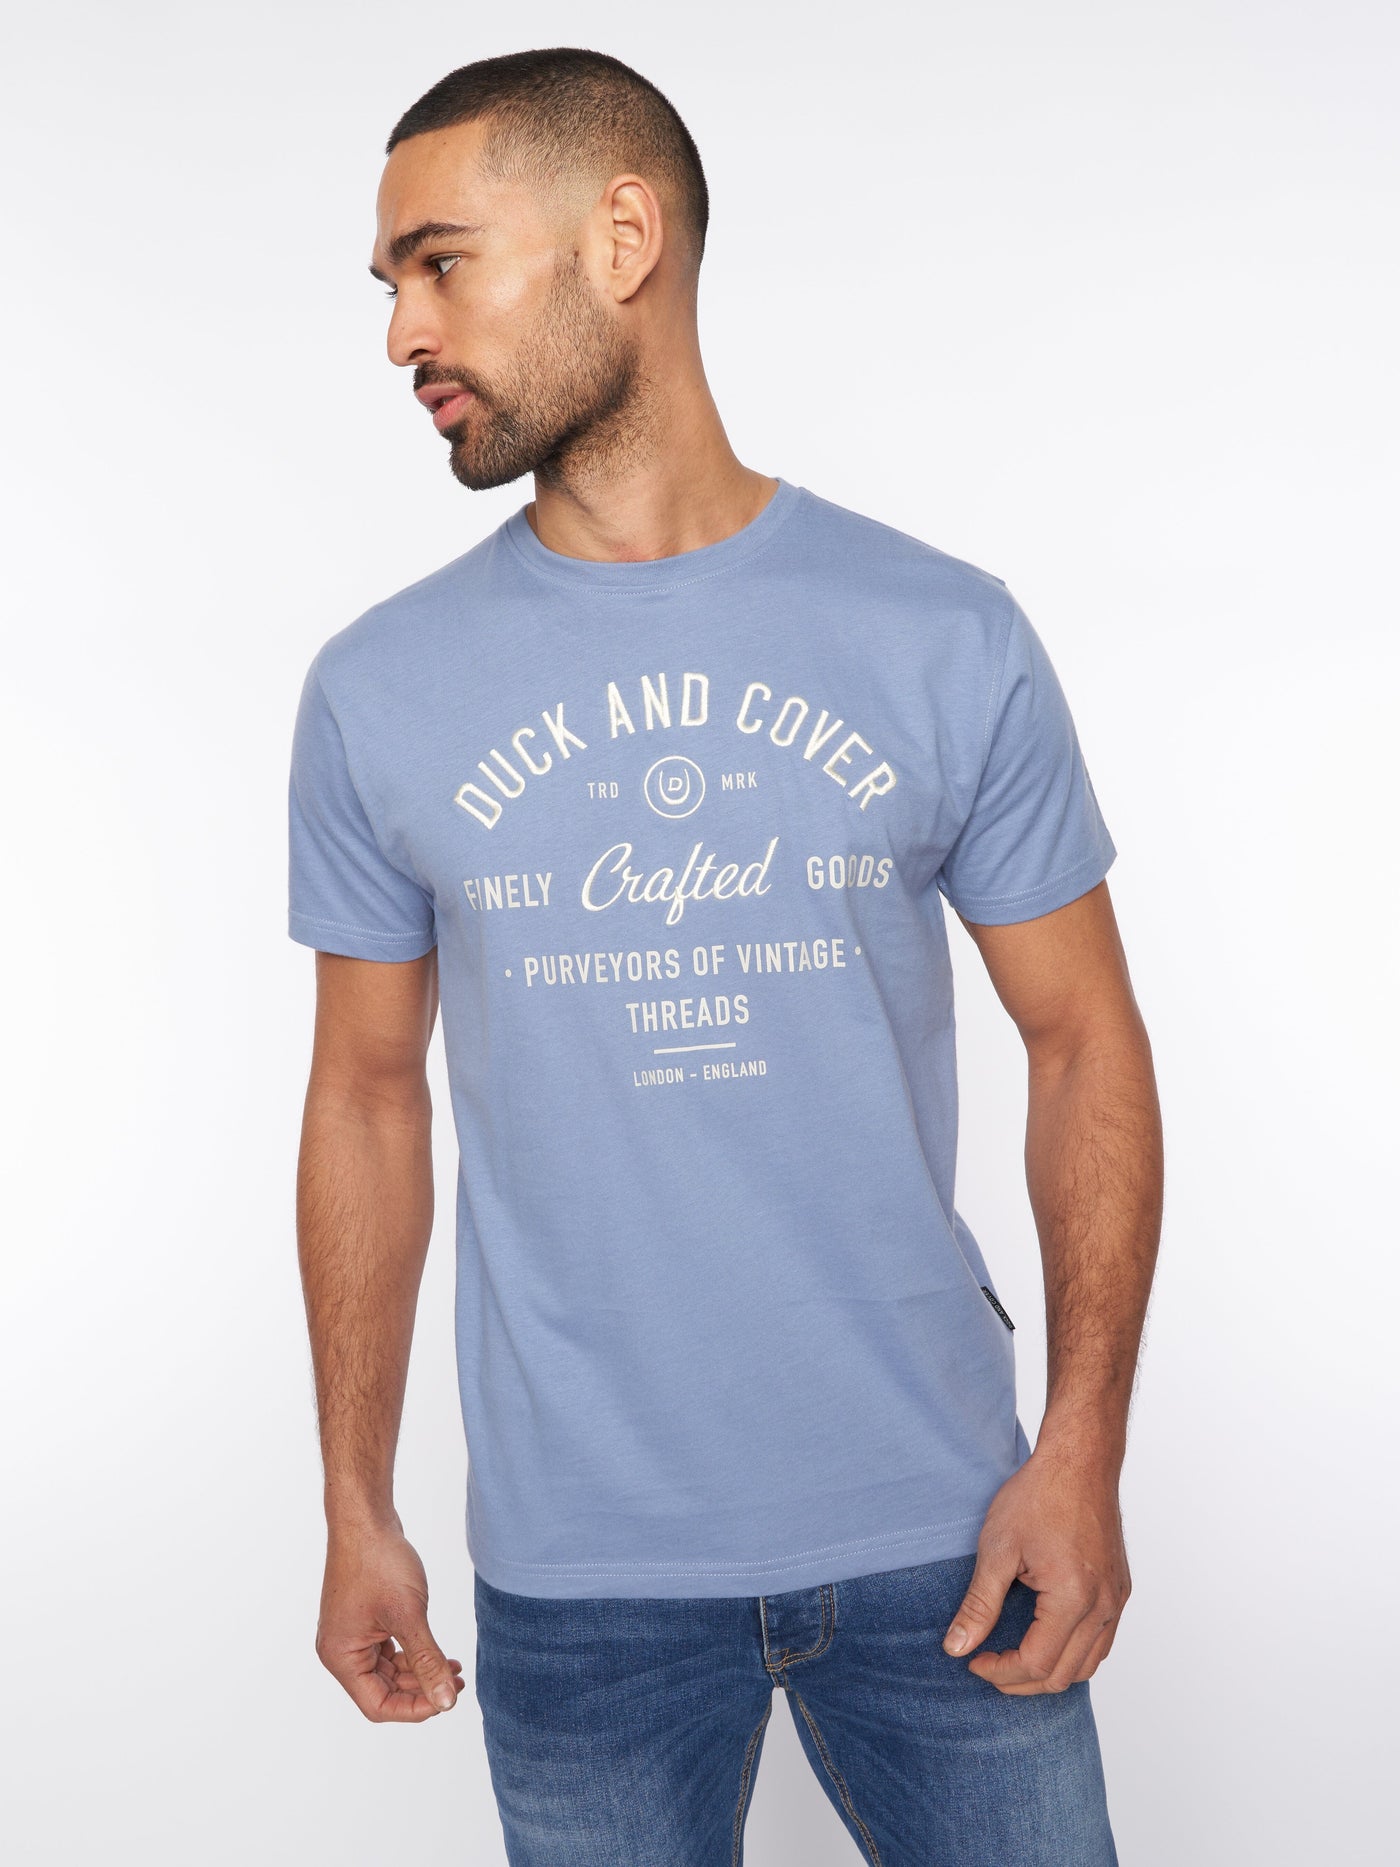 Kacper T-Shirt Blue